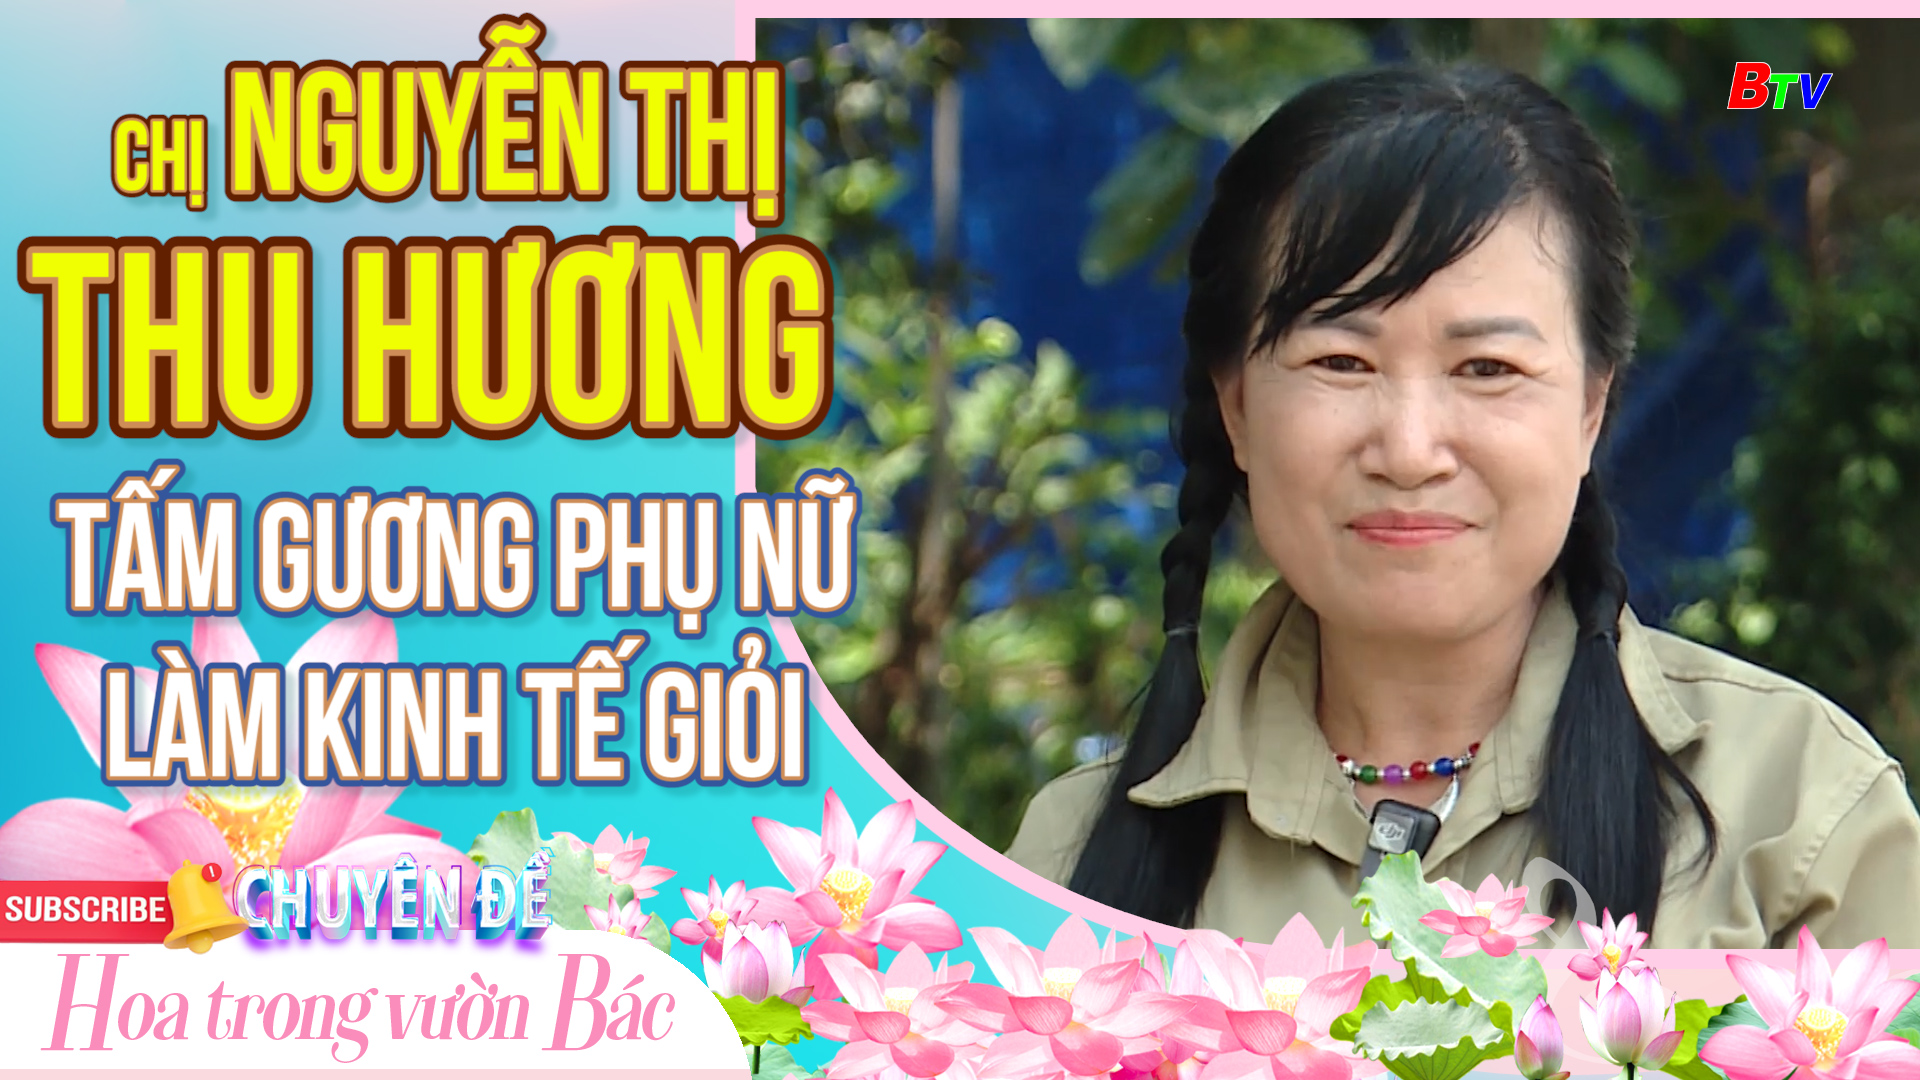 Chị Nguyễn Thị Thu Hương – Tấm gương phụ nữ làm kinh tế giỏi